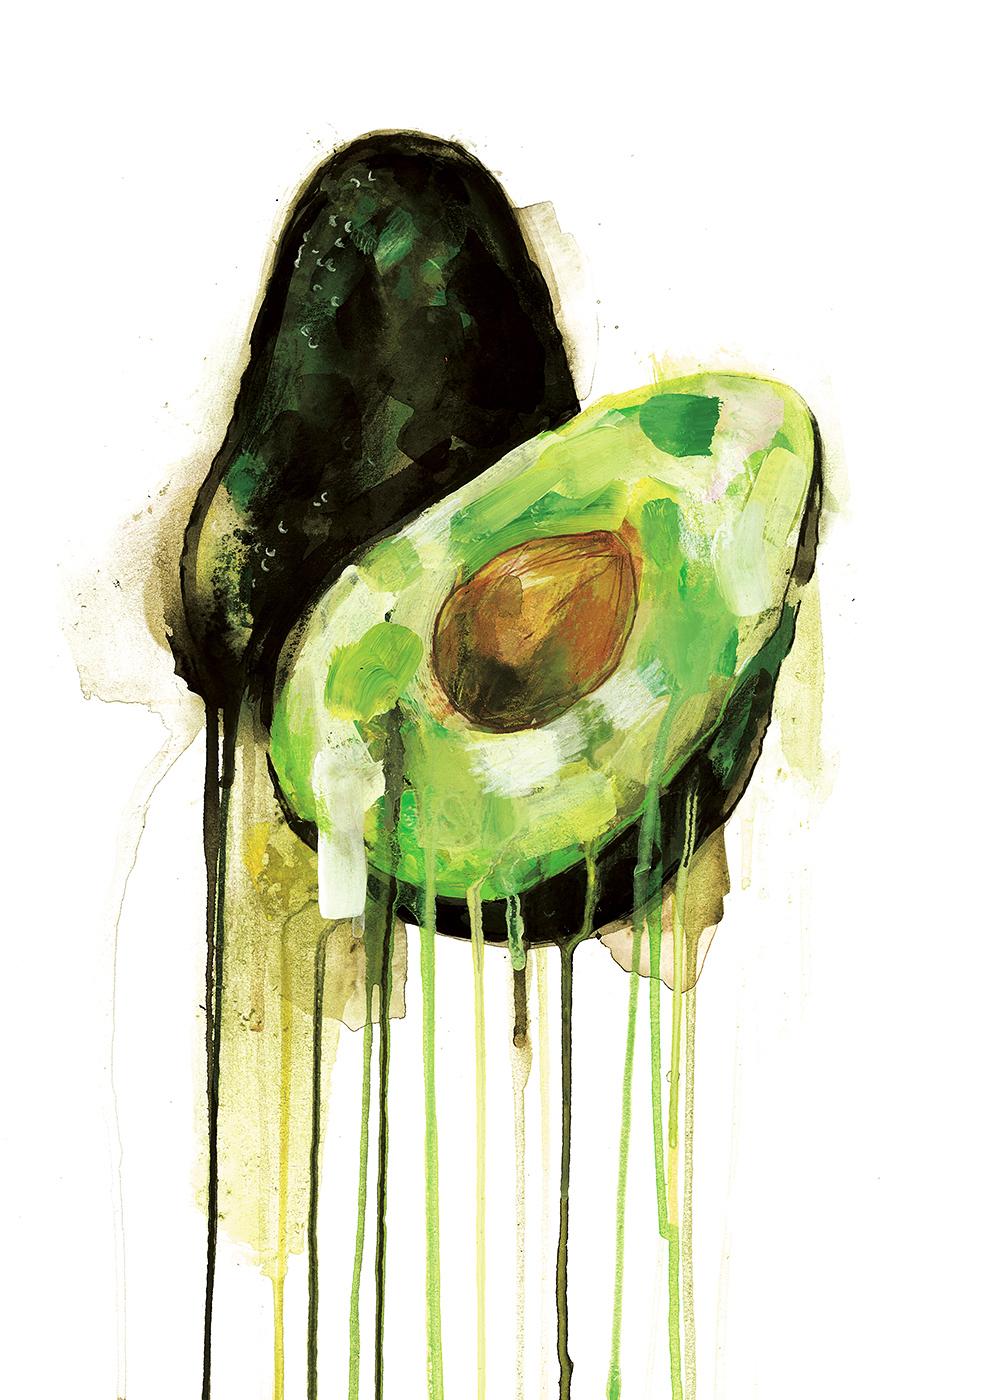 Diptychon aus Avocado und Tomatenranke

Gesamtgröße cm : H140 x B100

Avocado.
Ein schöner CYMK-Siebdruck von Gavin Dobson.
Dieses beliebte Kunstwerk basiert auf einem Original-Gouache-Gemälde des Frühstücksklassikers und wird vom Künstler